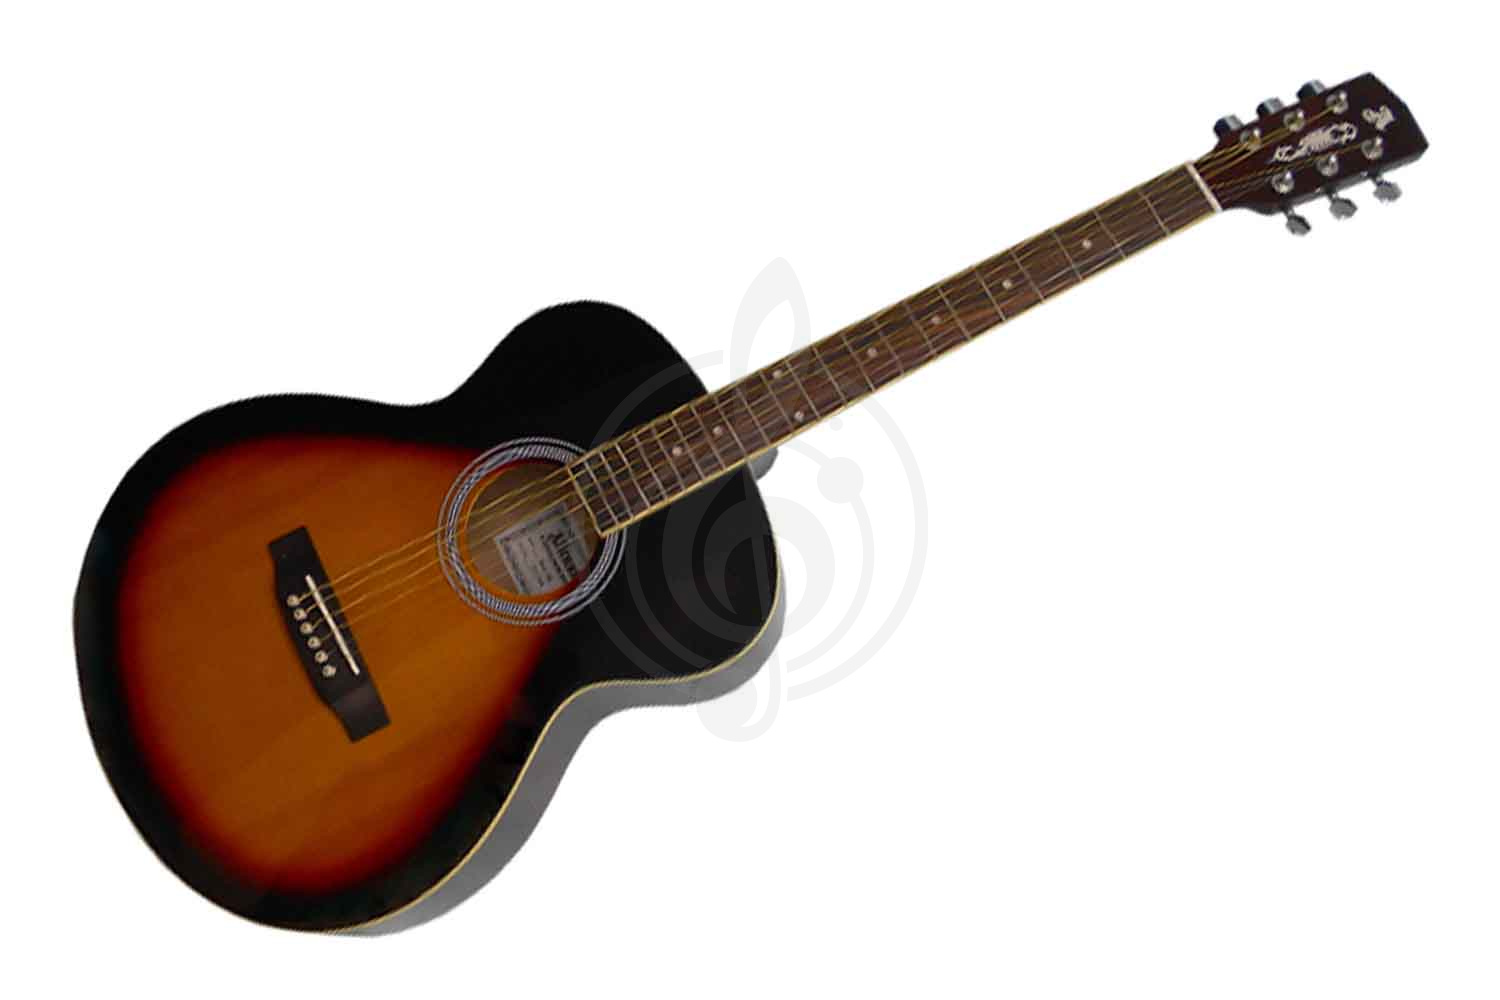 Акустическая гитара Акустические гитары ALICANTE ALICANTE ROCK OBS Гитара акустическая,металлические струны, 22 лада ROCK OBS - фото 1